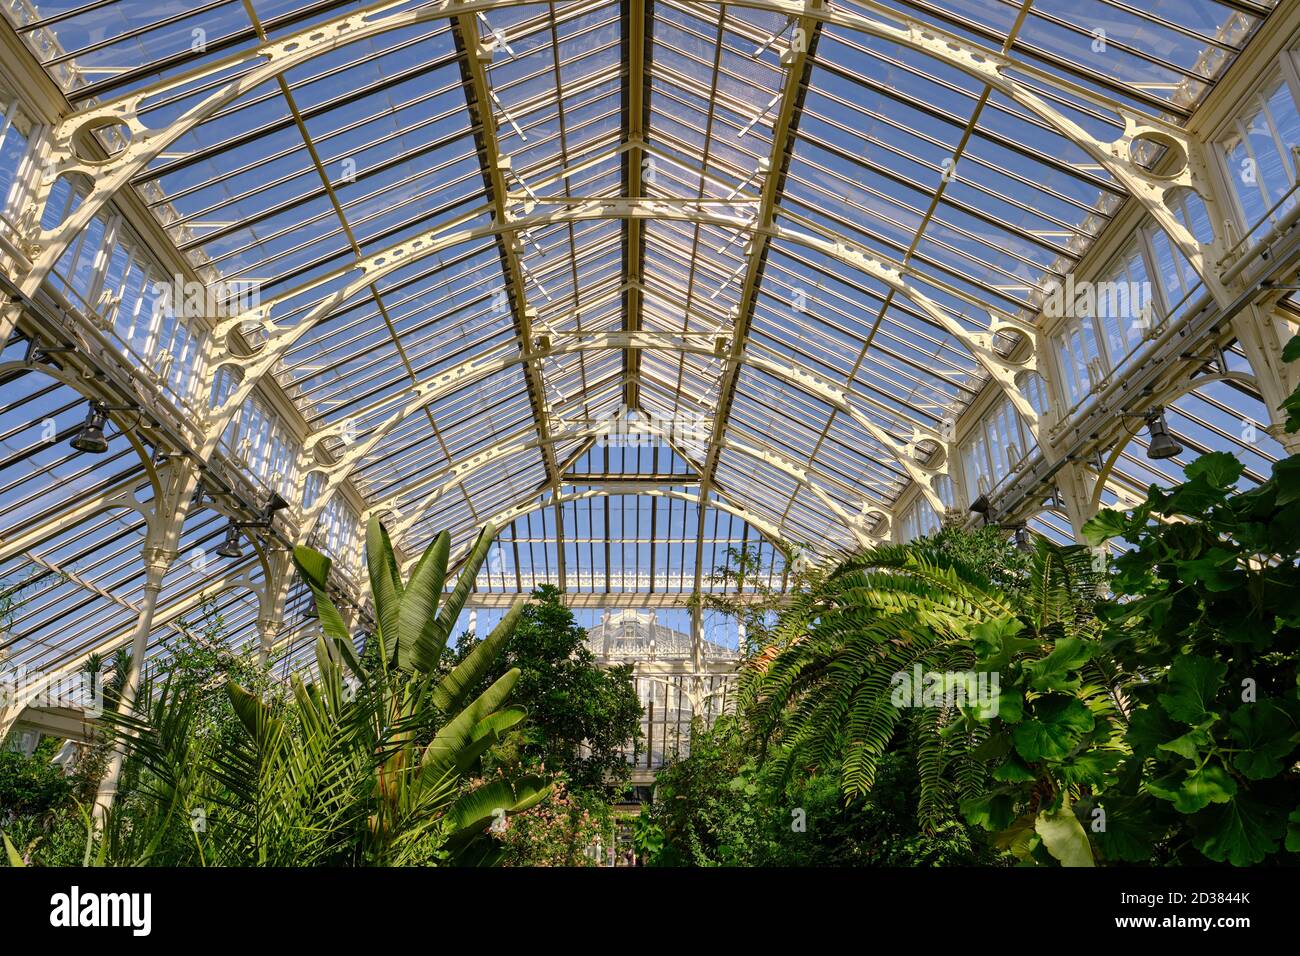 La maison Temperate dans les jardins botaniques royaux, Kew, la plus grande des célèbres serres de verre victoriennes. Banque D'Images